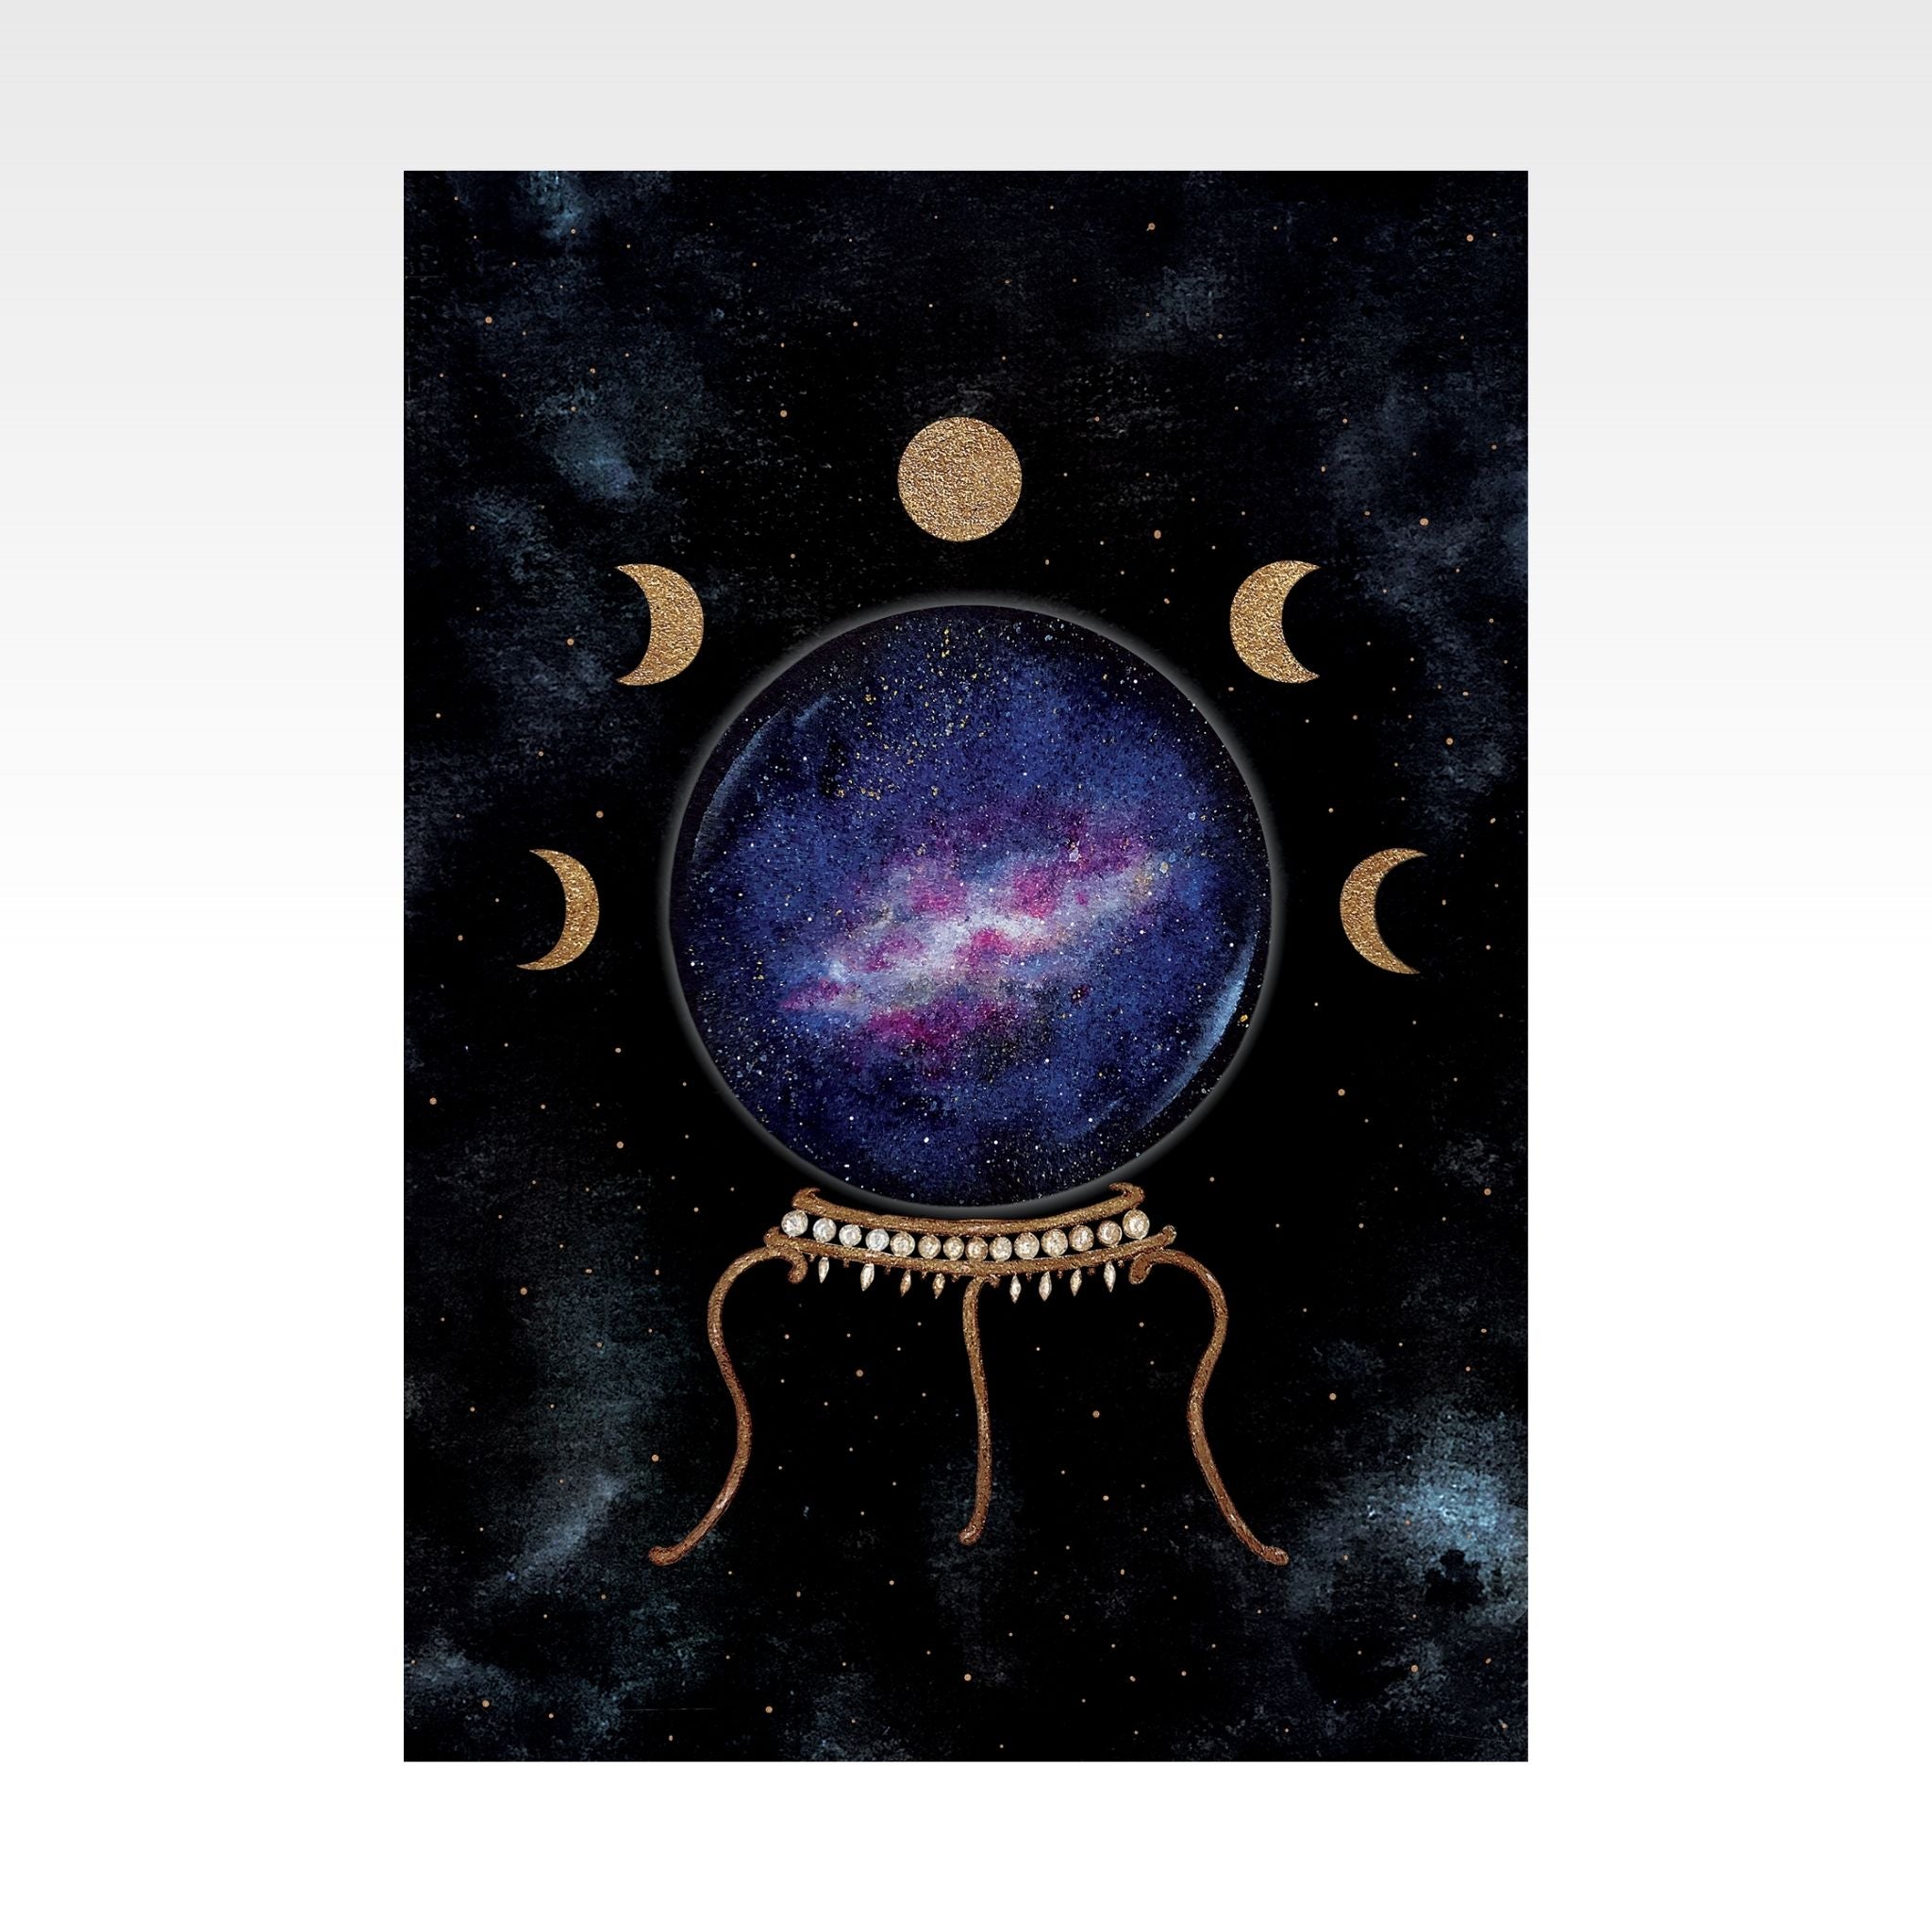 Affiche The Flow Design d'une boule de cristal magique et céleste dans un ciel étoilé entouré des phases de lune